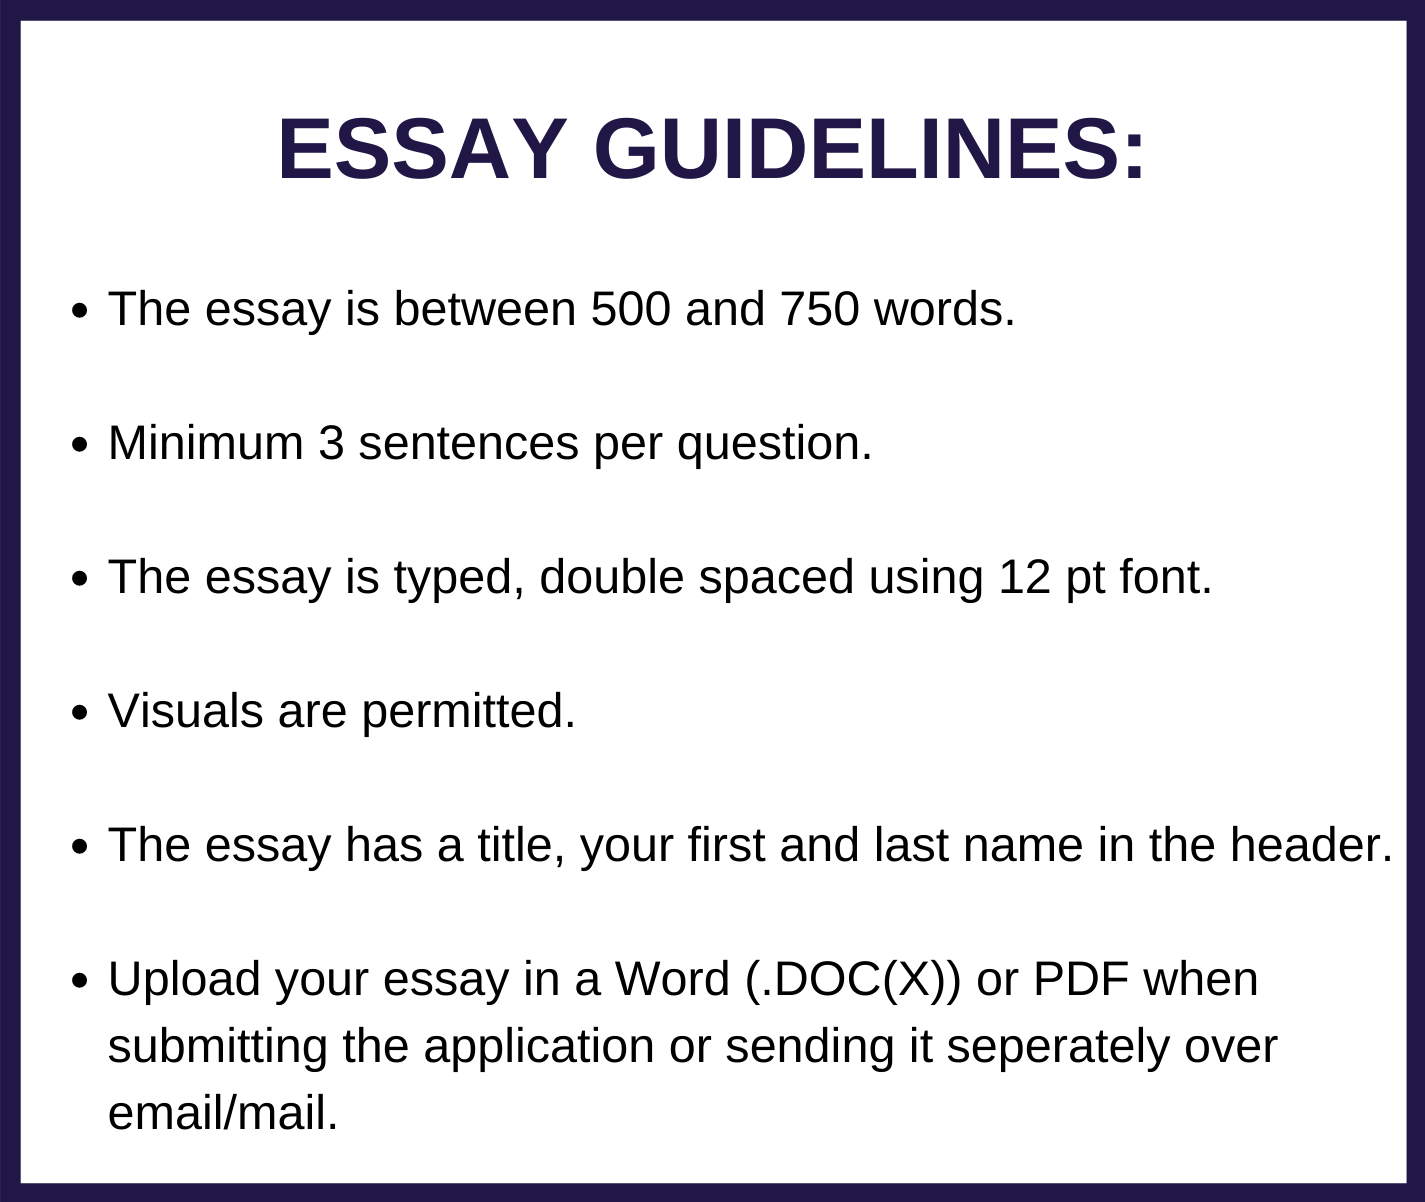 essay guidelines for scholarship usmfcu